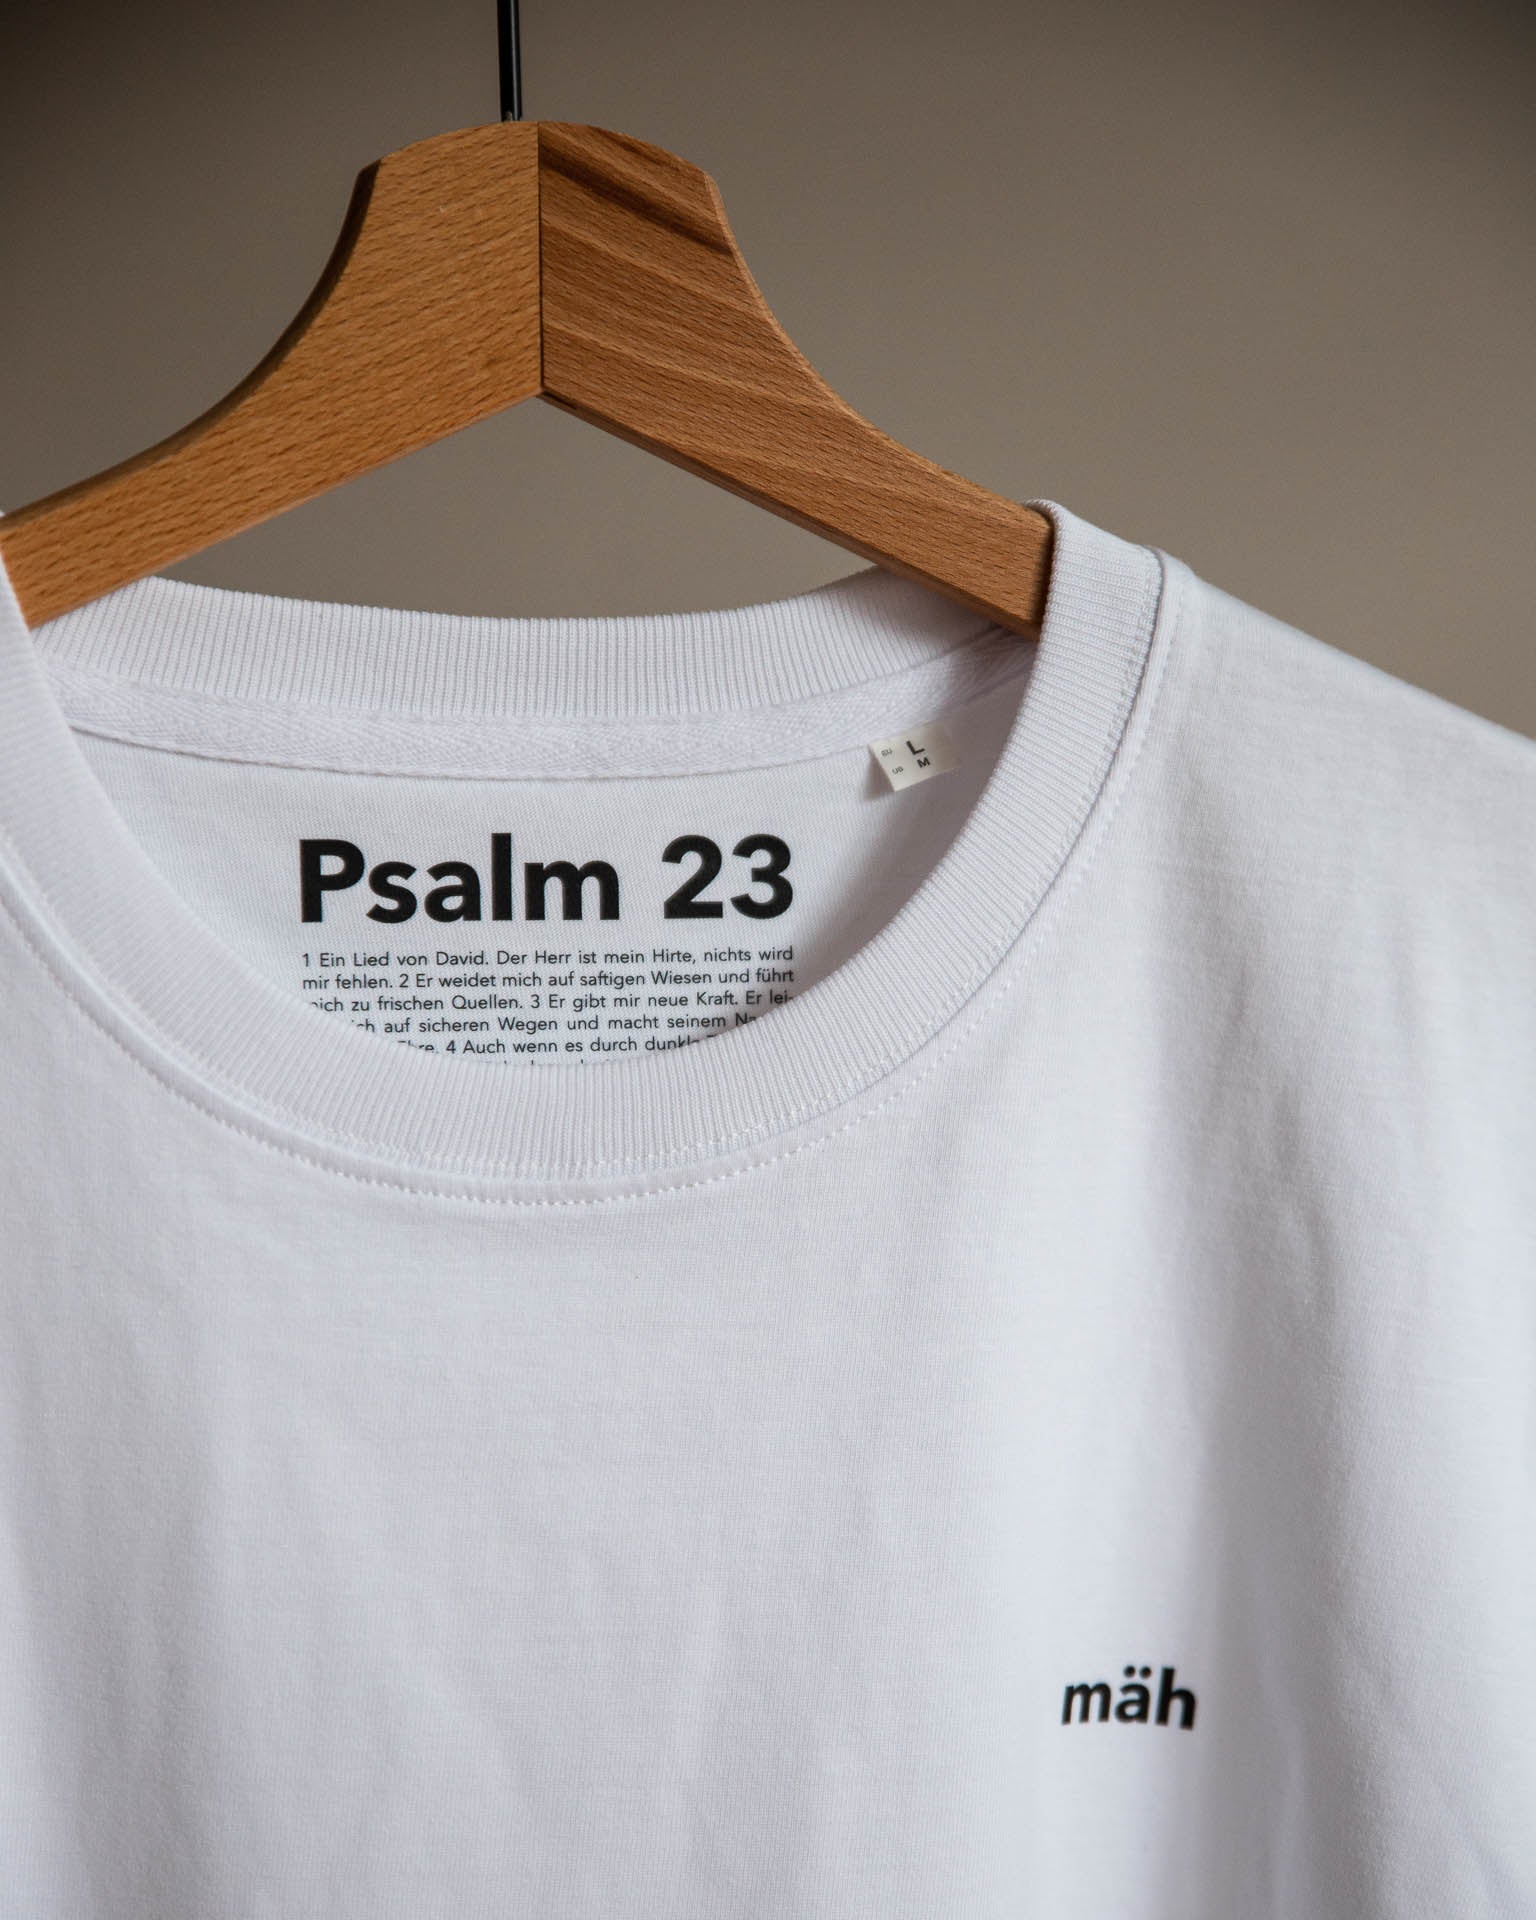 mäh / Tshirt / Psalm 23